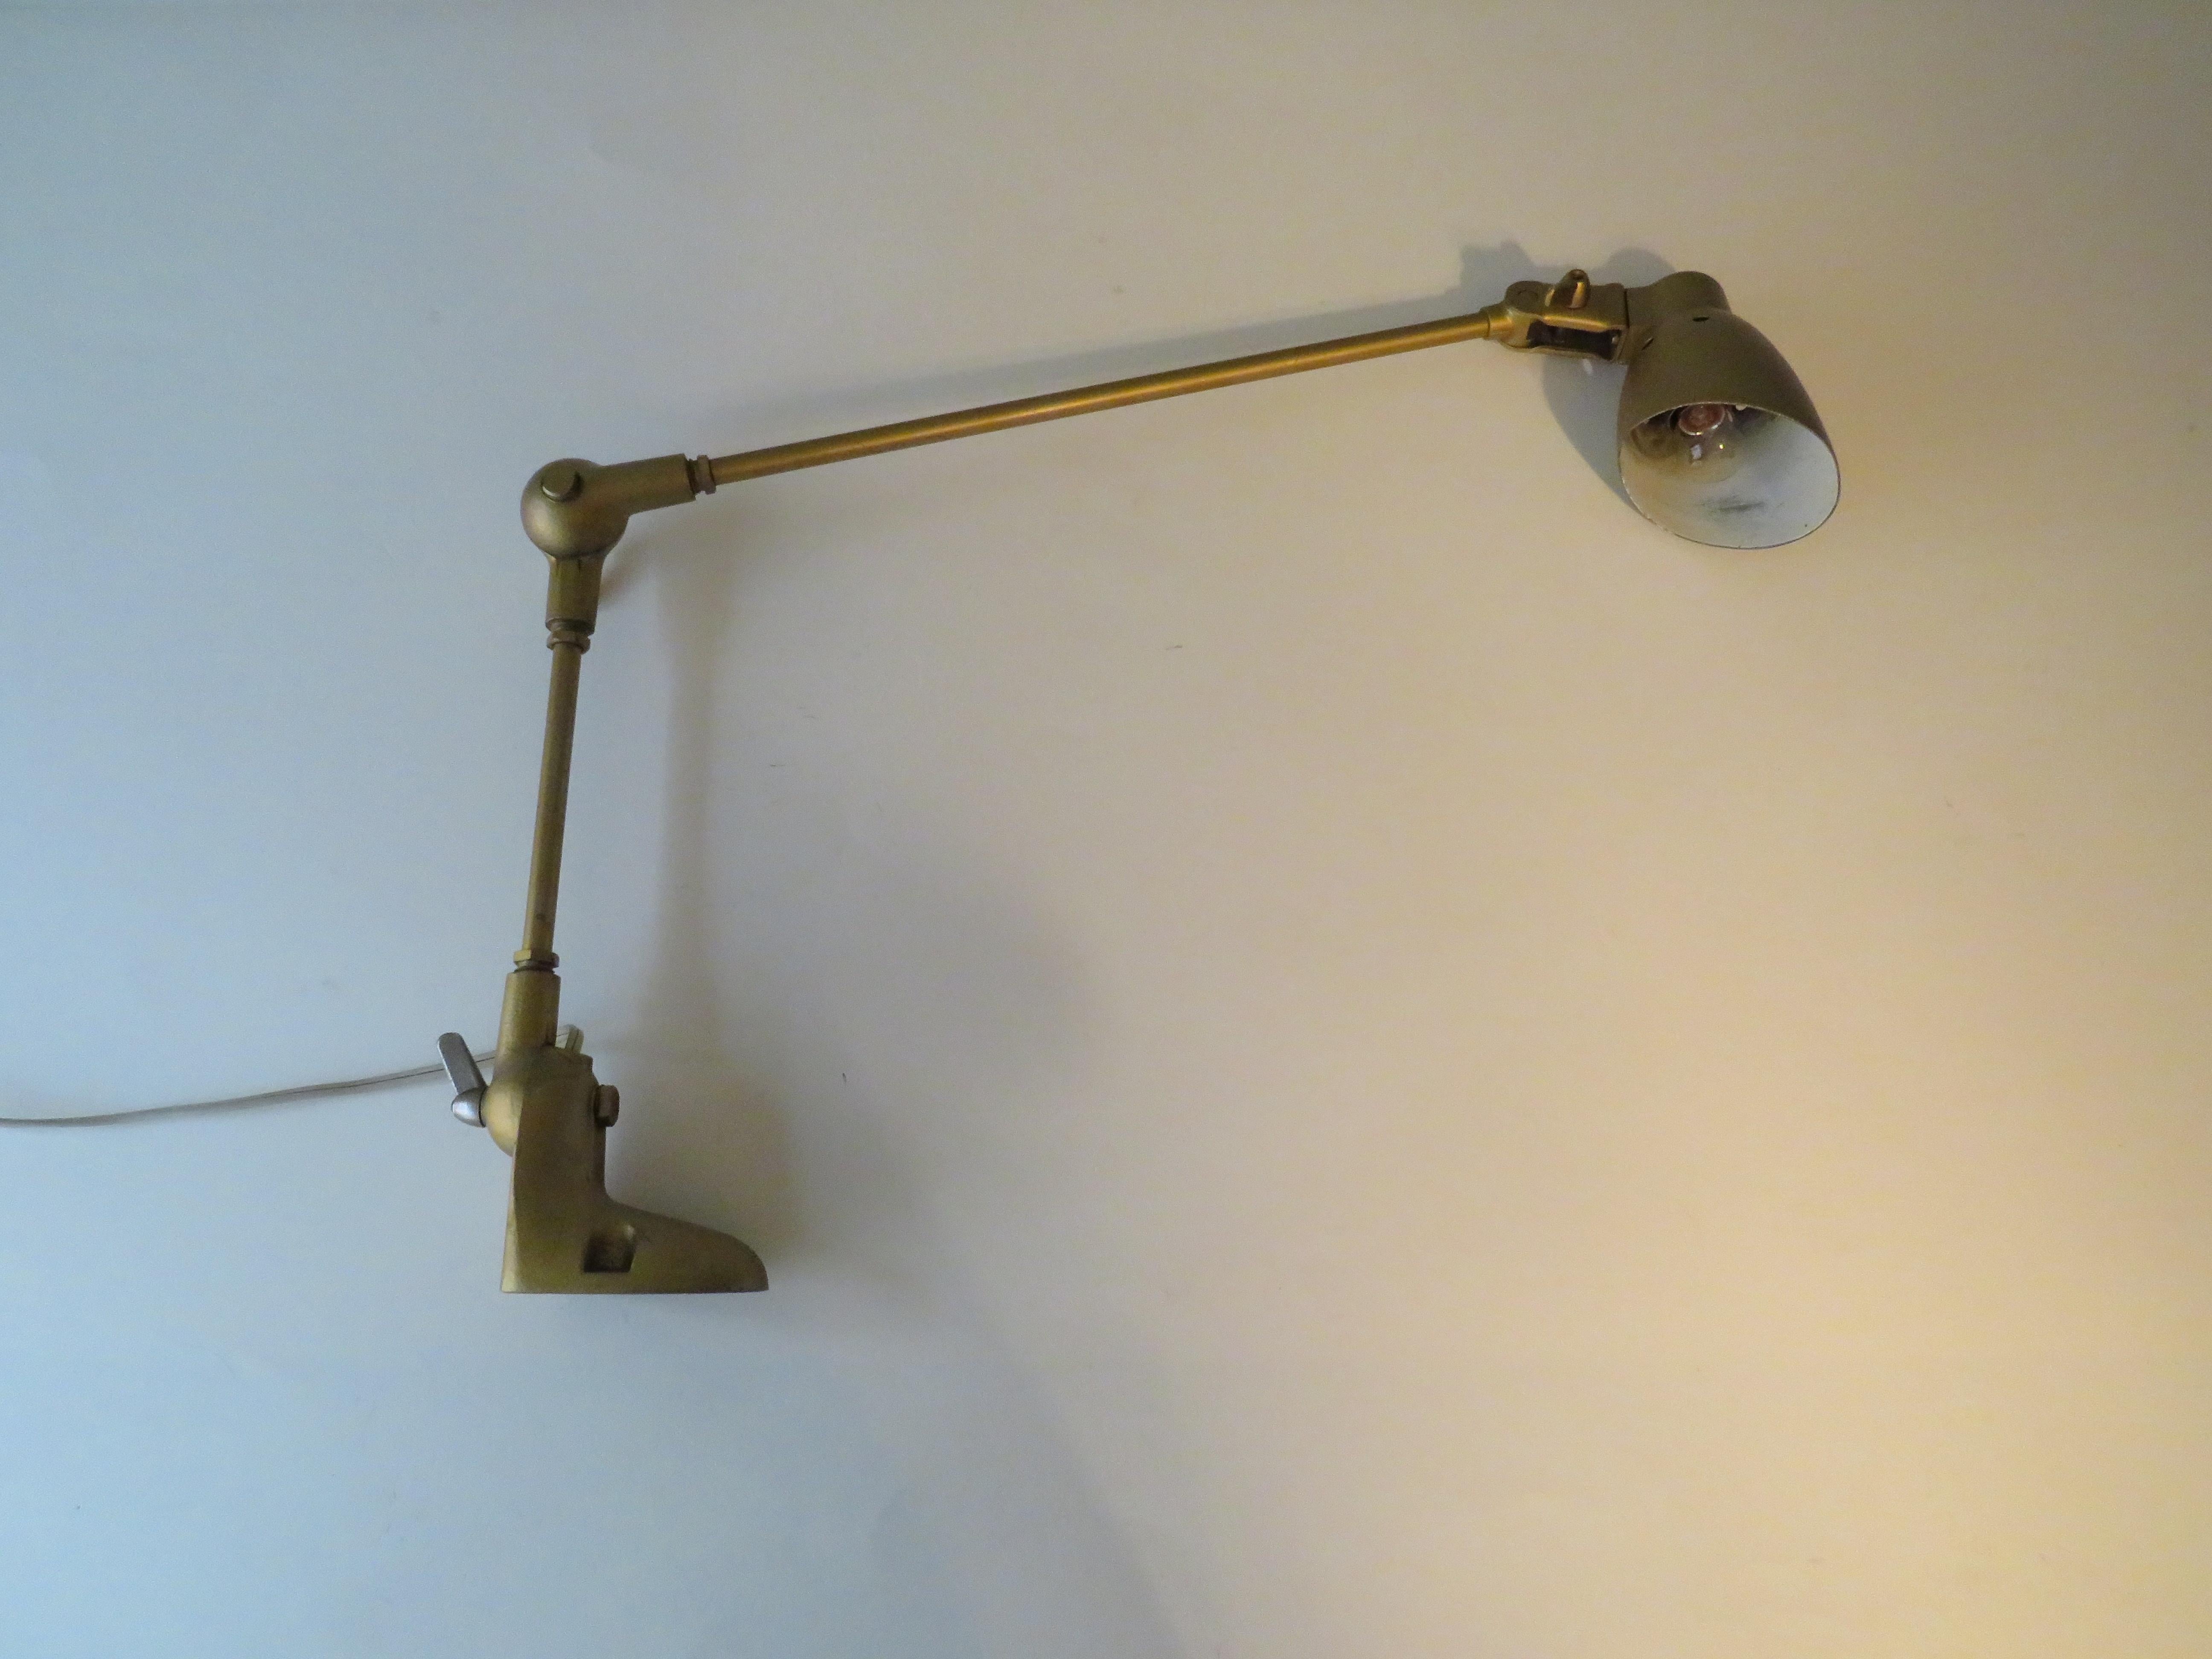 Lampe industrielle de Pfaff, fabricant de machines à coudre, Allemagne 1950.
La lampe en métal, de couleur or martelé, est dotée de 2 bras réglables et l'abat-jour peut également être positionné dans différentes positions. La lampe peut être fixée